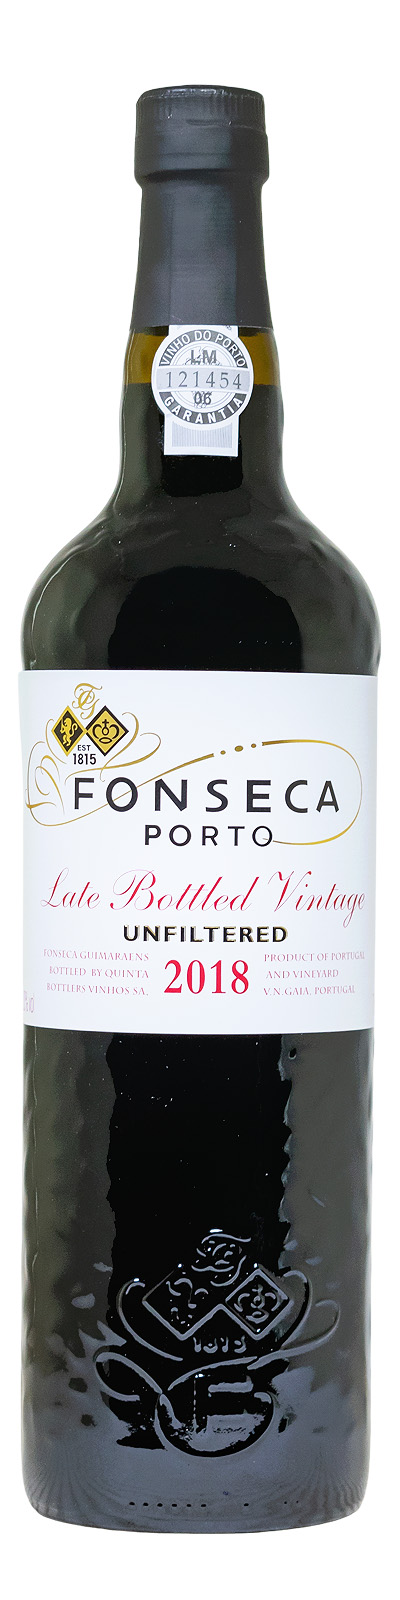 Fonseca LBV 2018 Port - 0,75L 20% vol